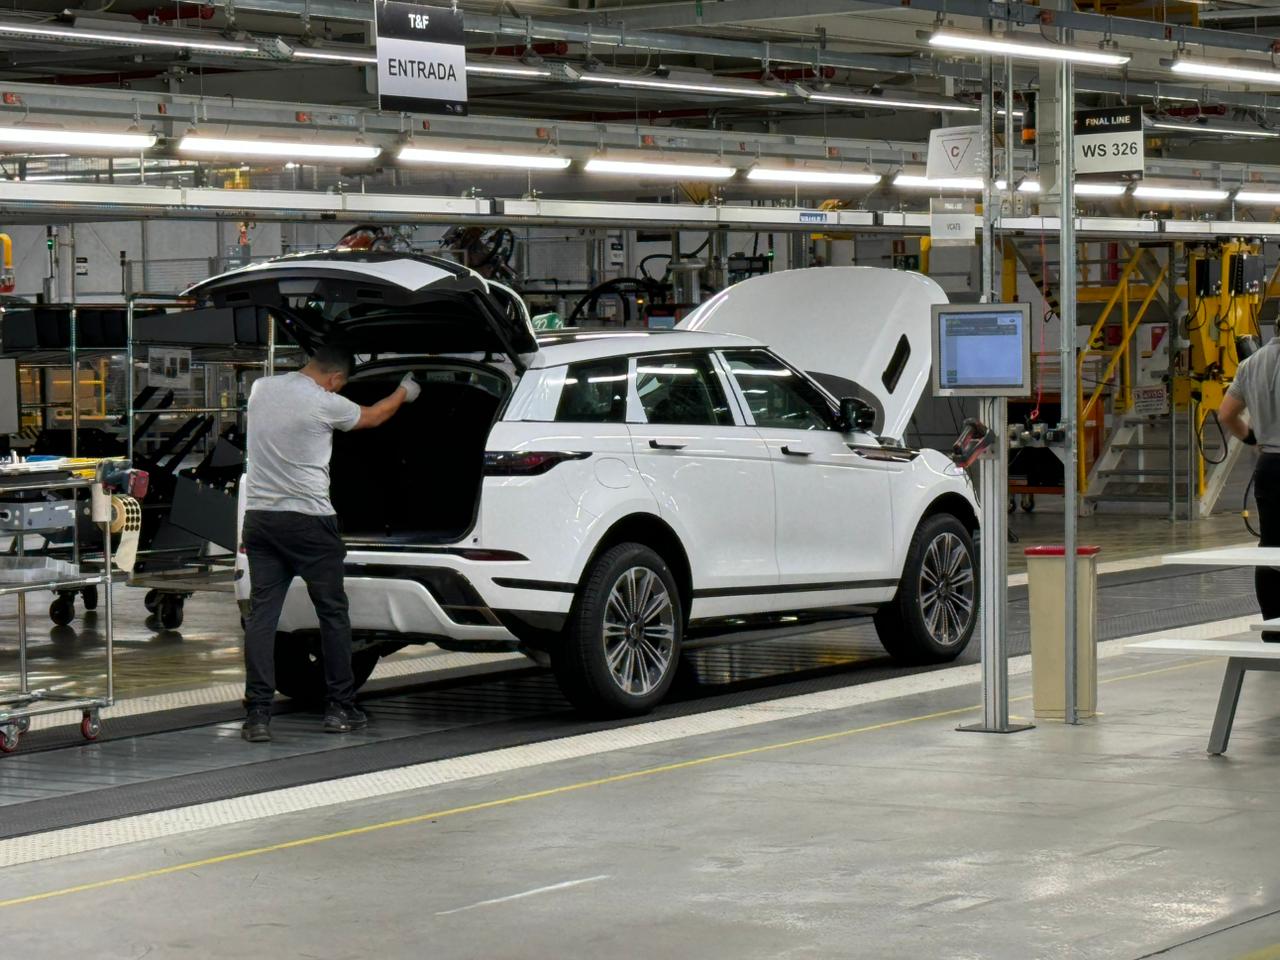 A Jaguar Land Rover produz carro no Brasil? Veja como está a fábrica no RJ hoje 